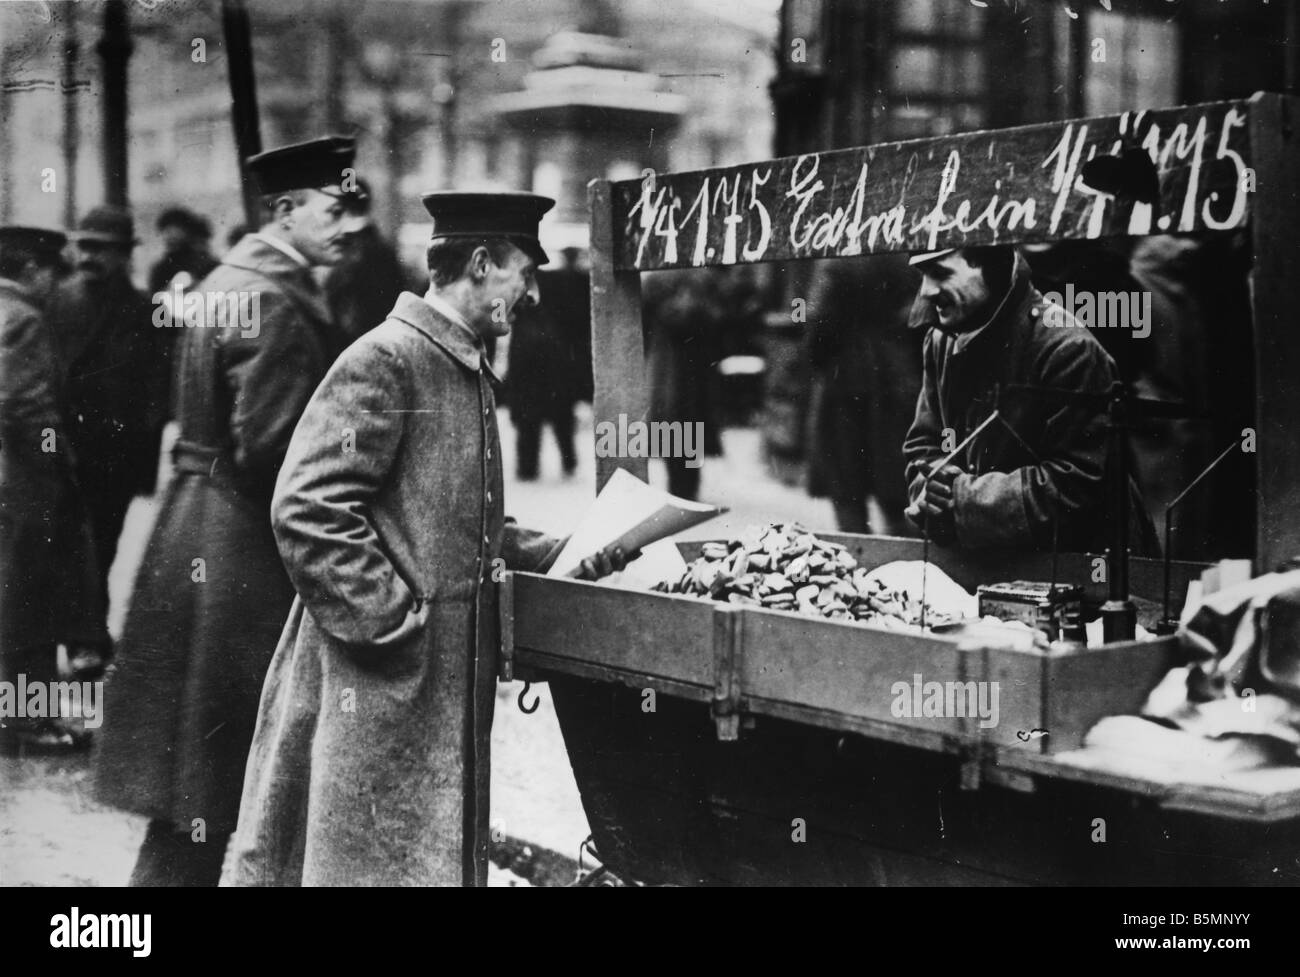 Soldato vende la rivoluzione alimentare rivoluzione di Berlino 1918 19 Berlin un soldato vendita di forniture alimentari foto Novembre 1918 Foto Stock